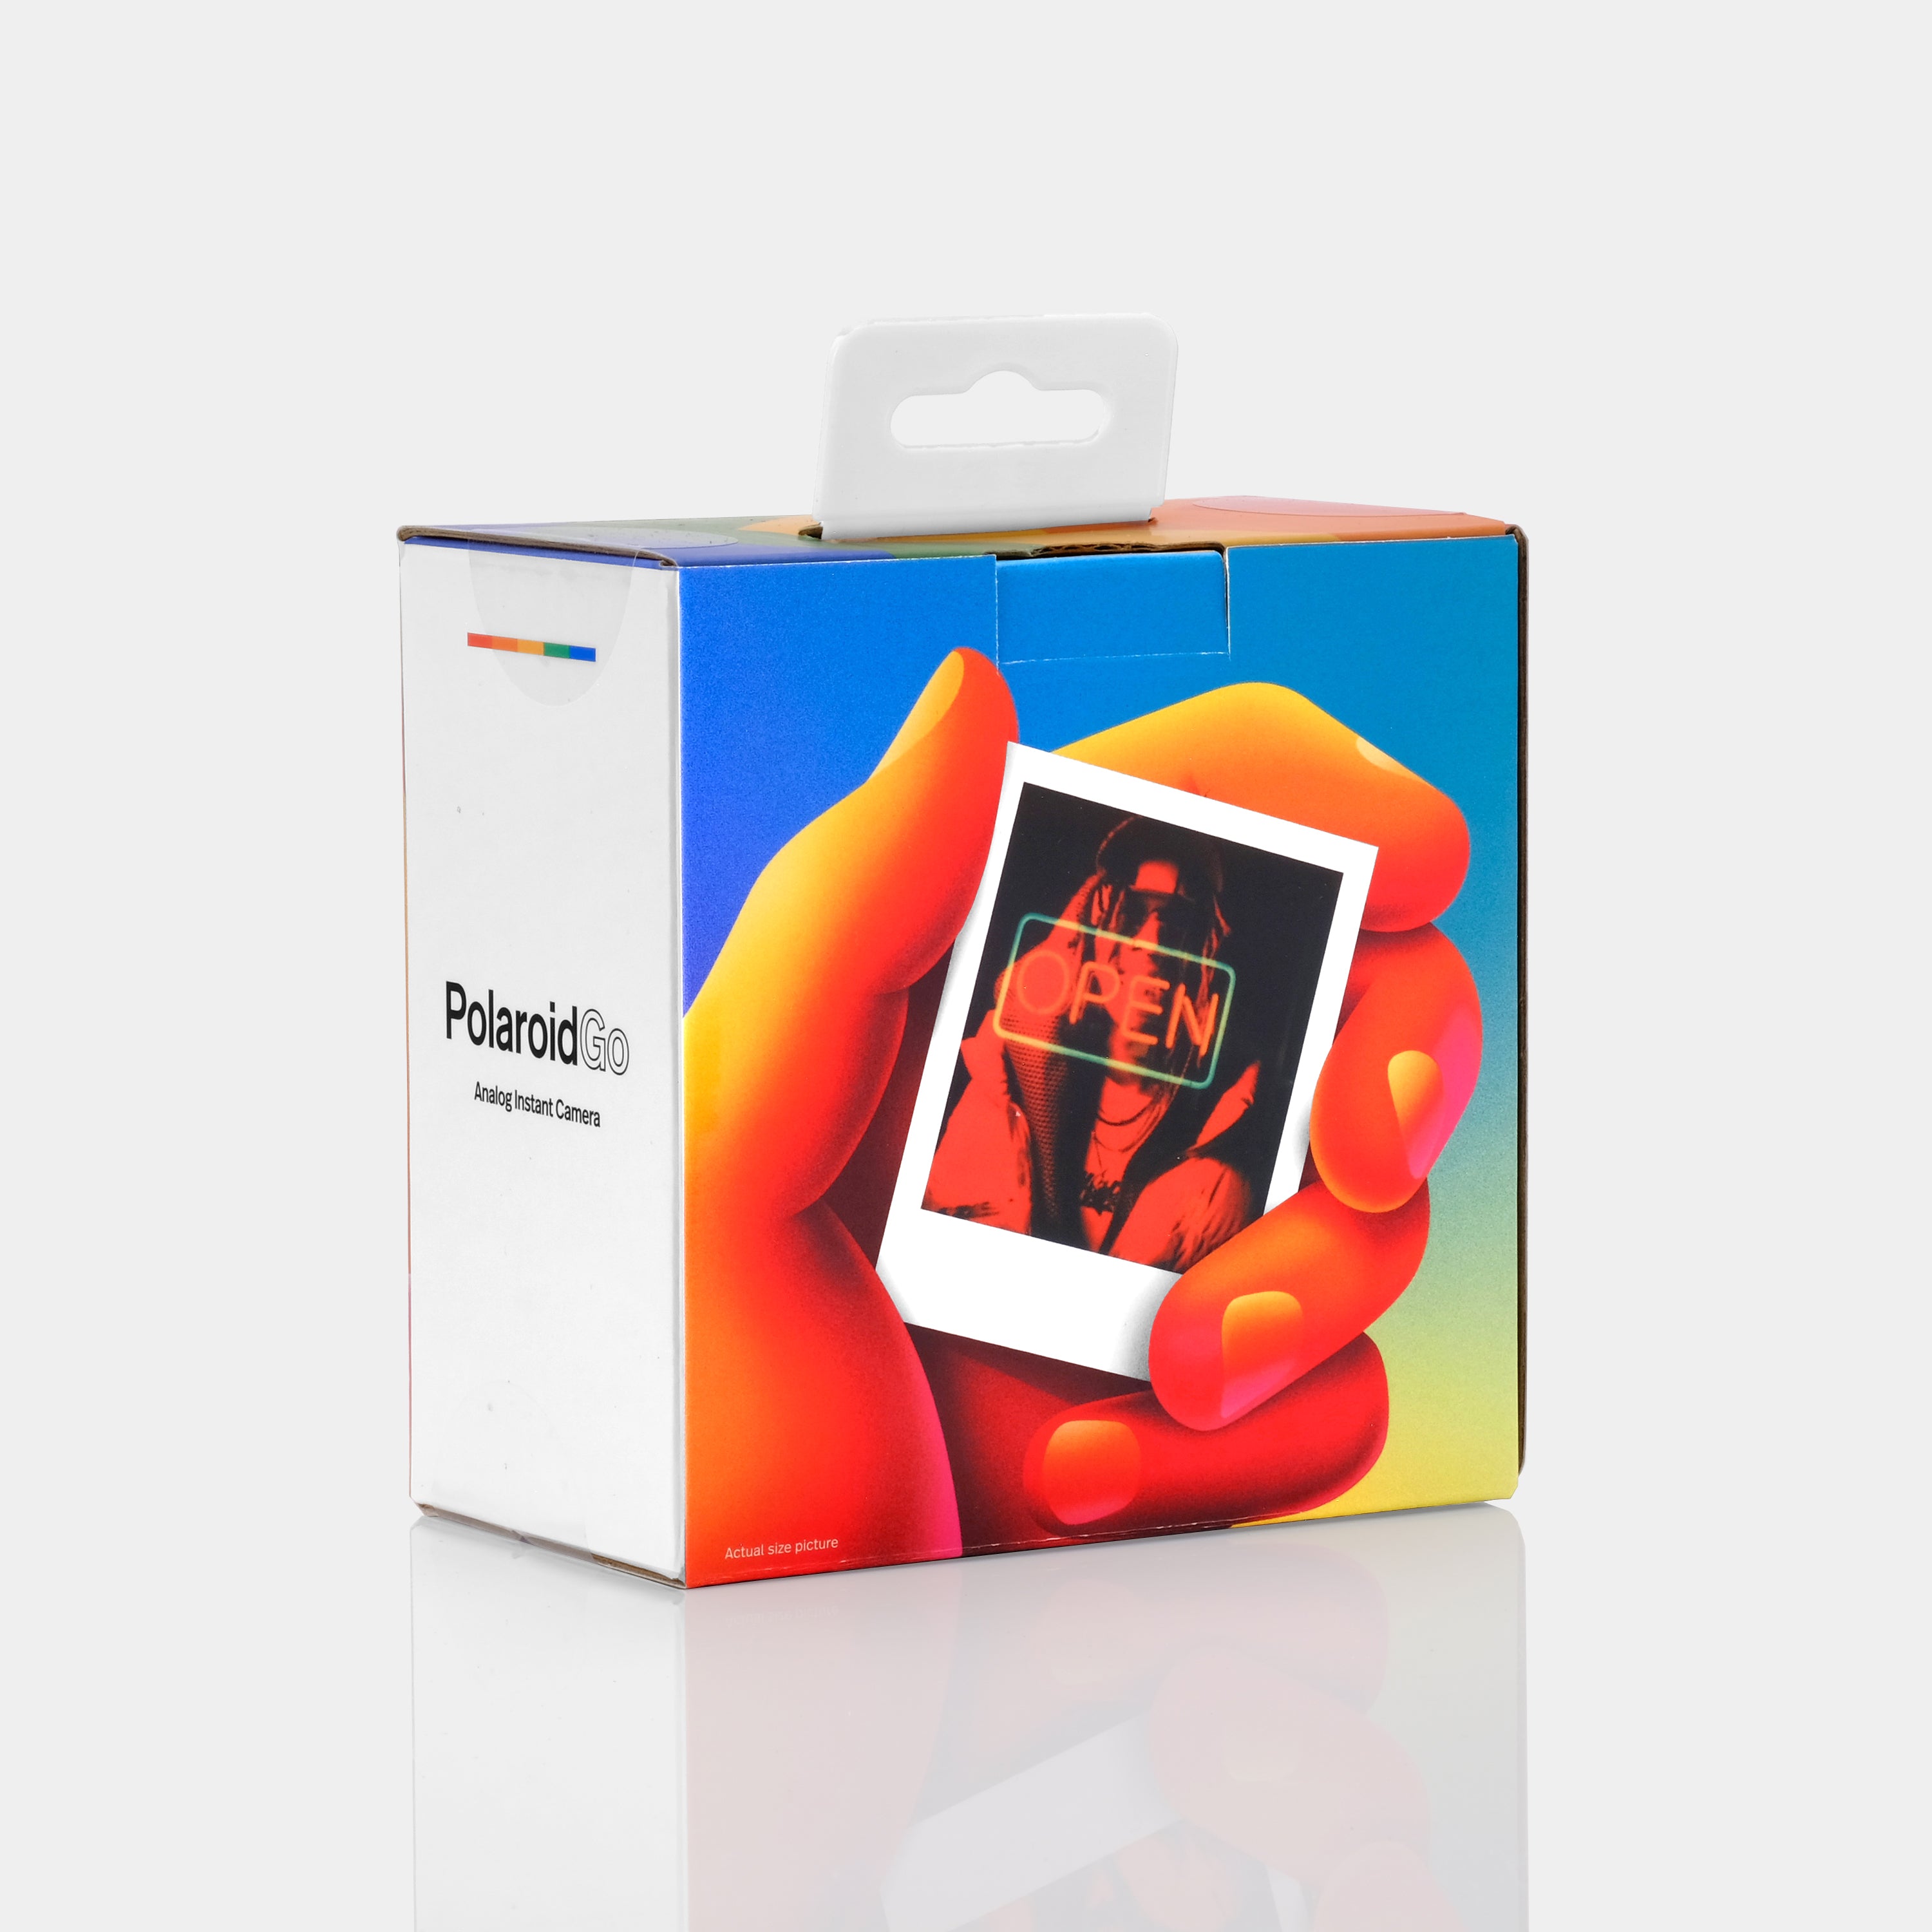 Polaroid Go - Red - quickmarketing